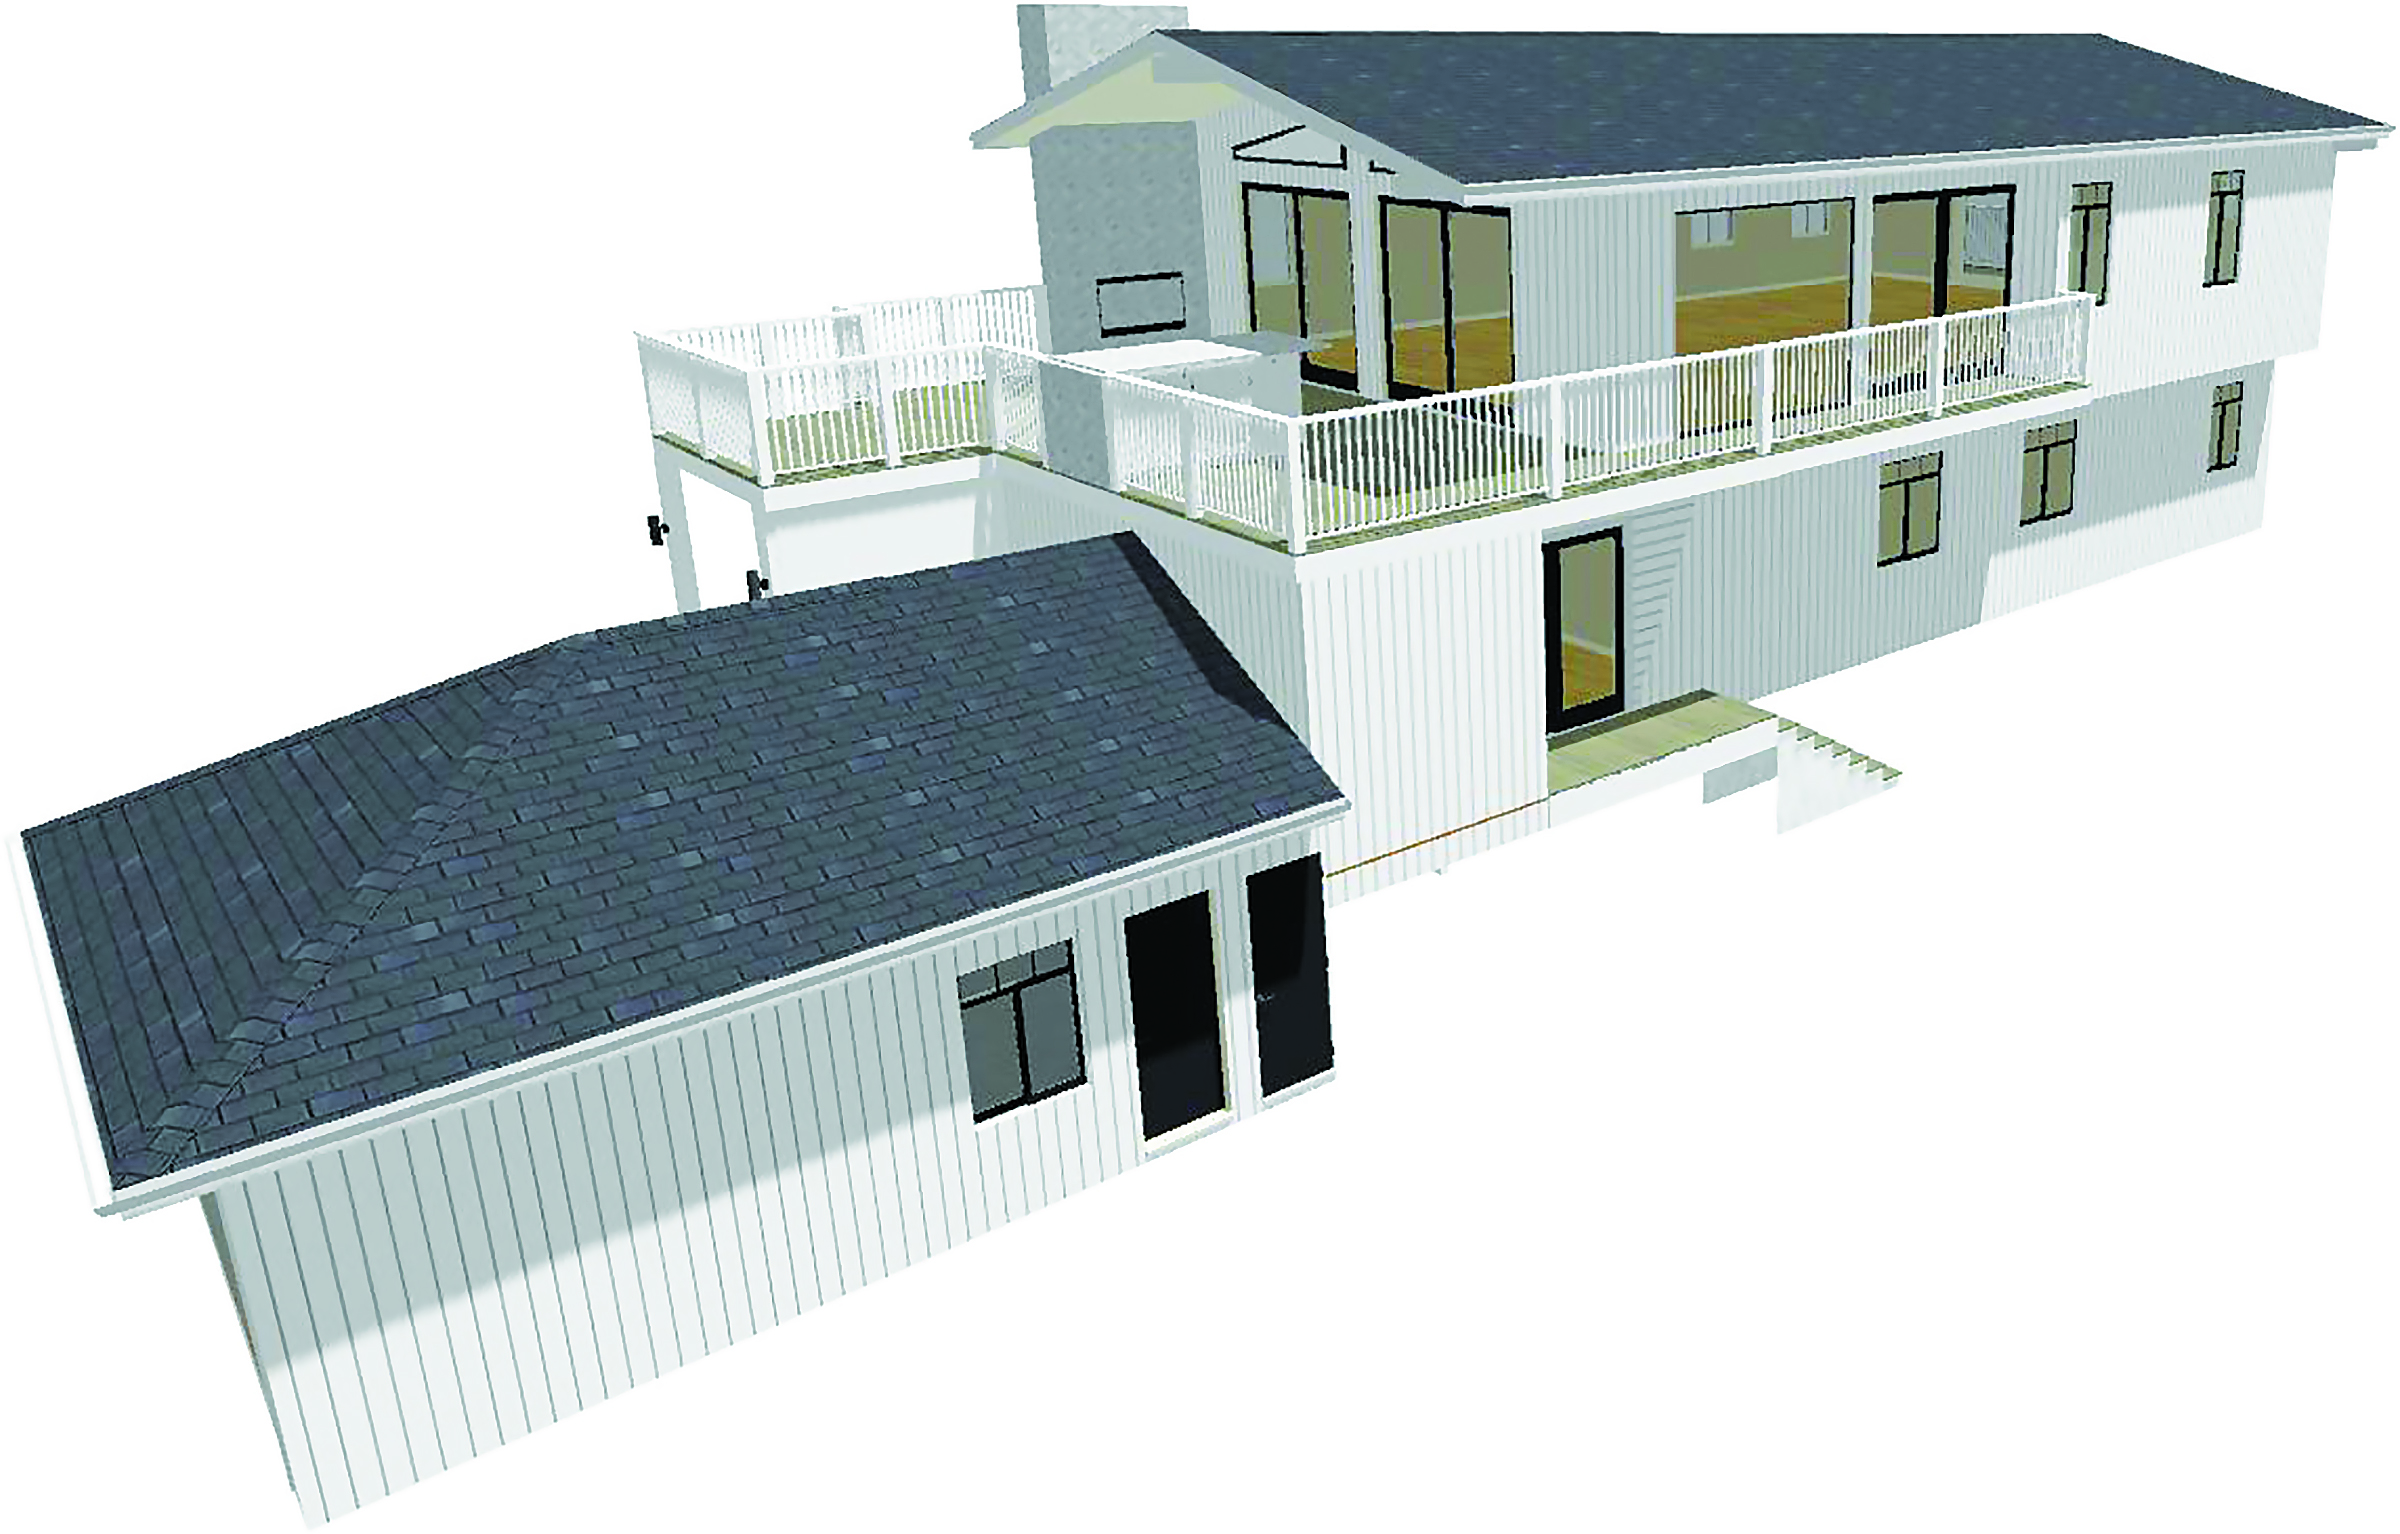 design for pro remodeler's model remodel home